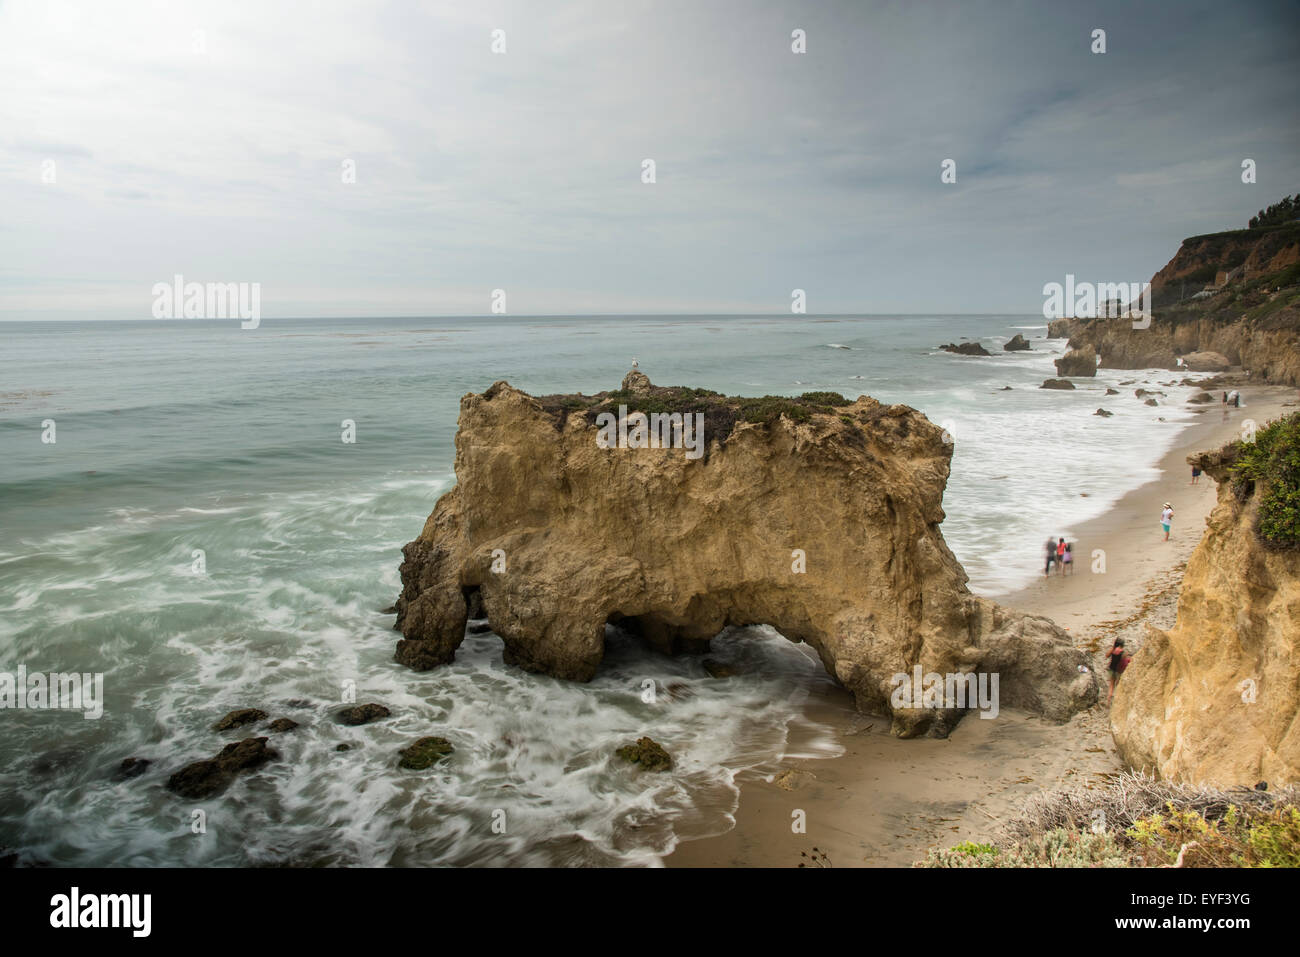 A monolith on Matador Beach - Southern California Stock Photo